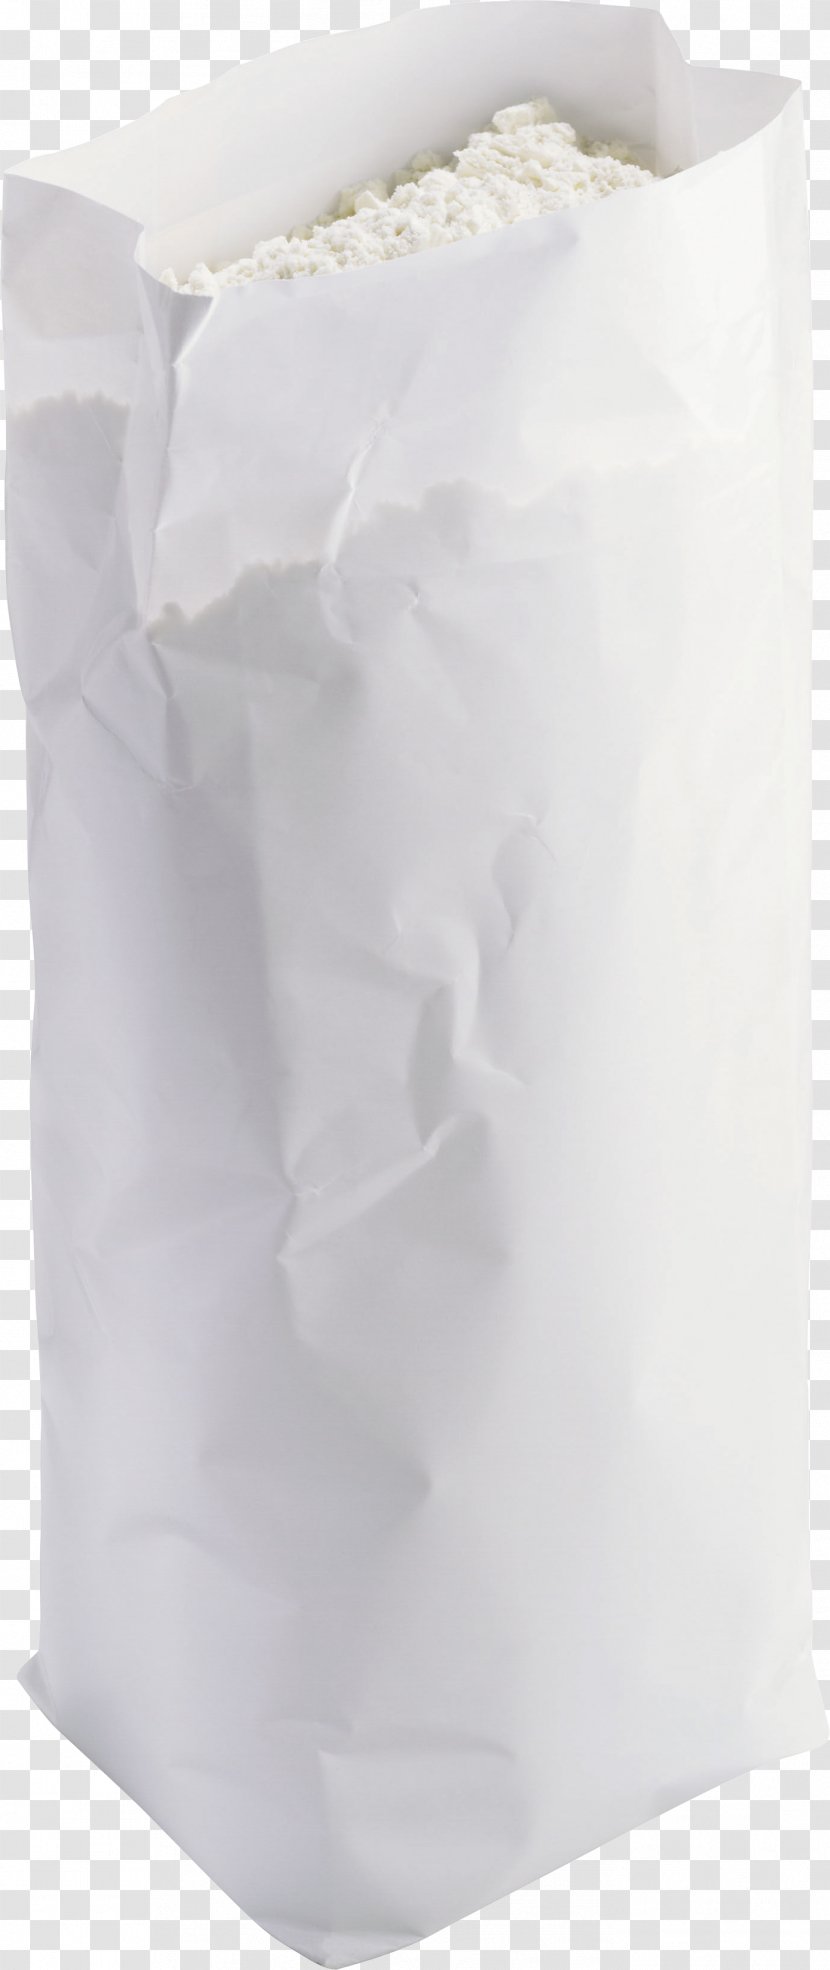 Paper Flour Transparent PNG